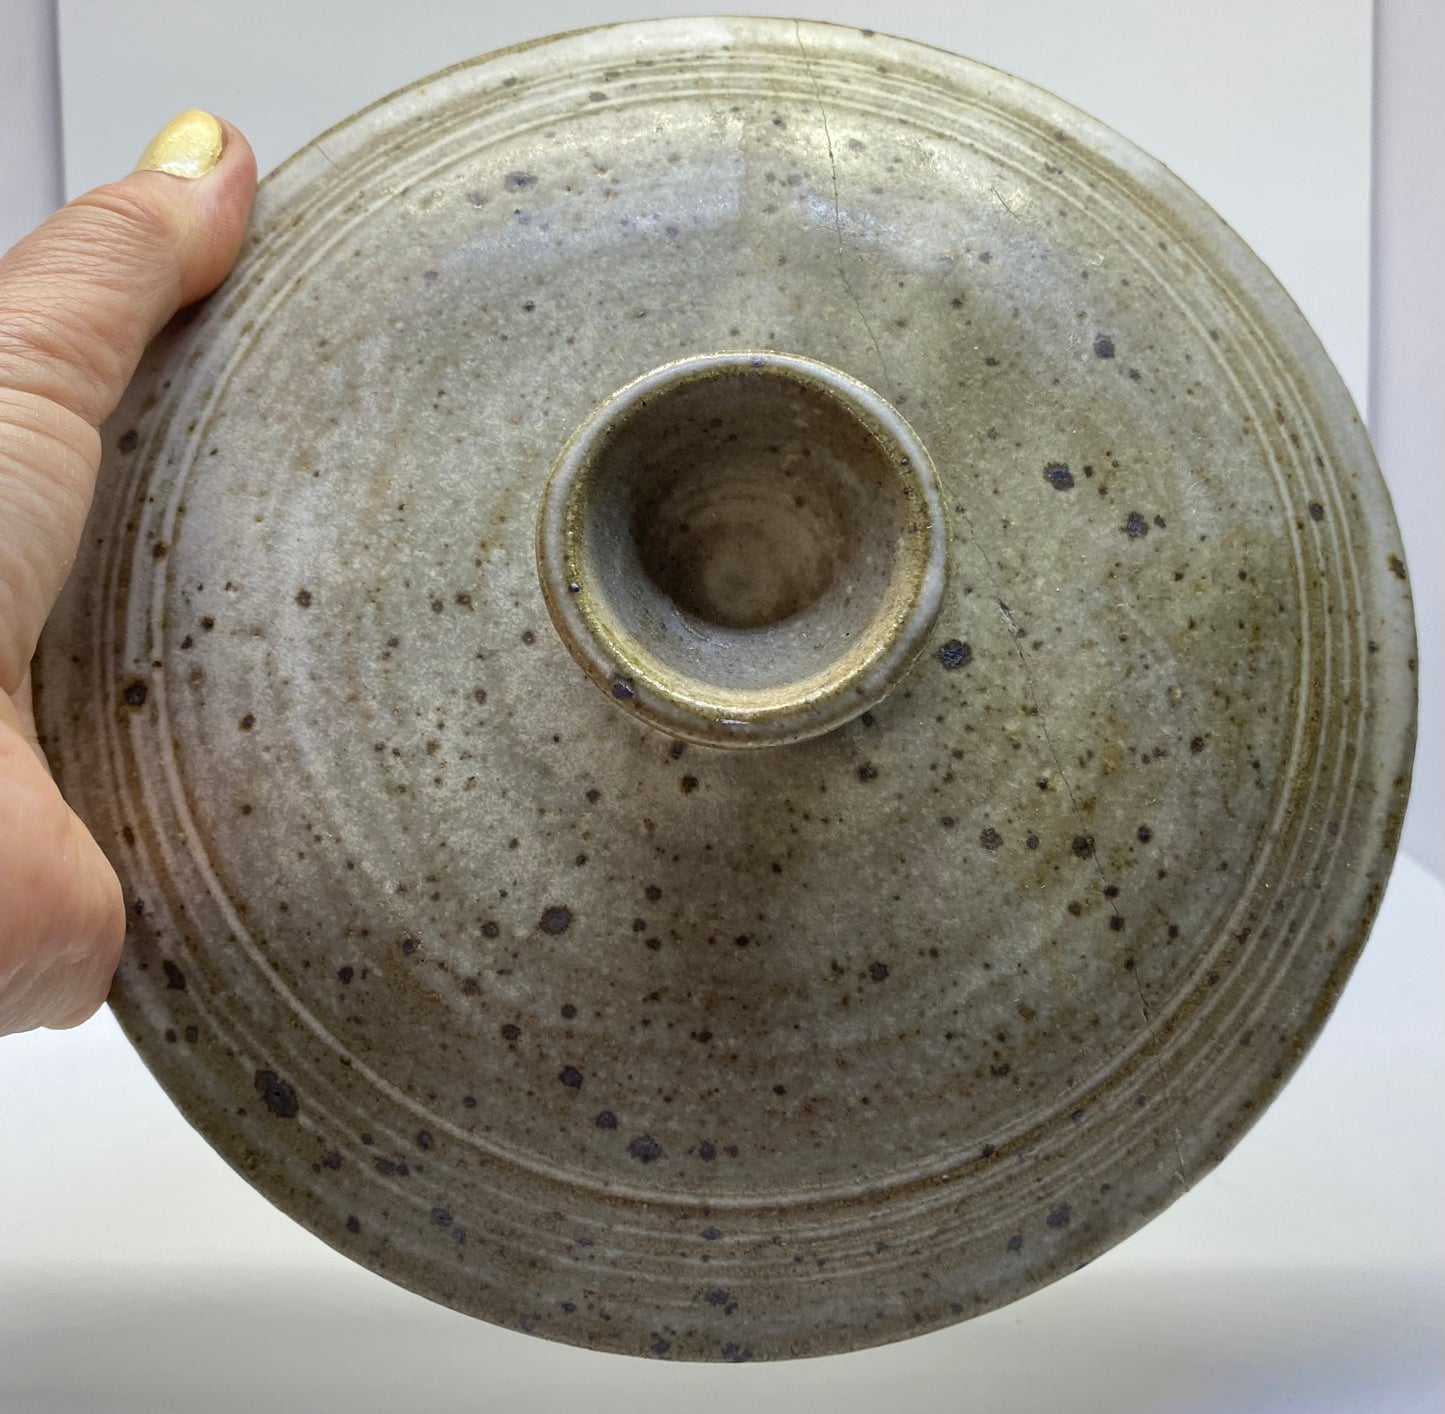 Cynthia Mitchell Tasmania - vintage pottery rice cooker - white dolomite glaze